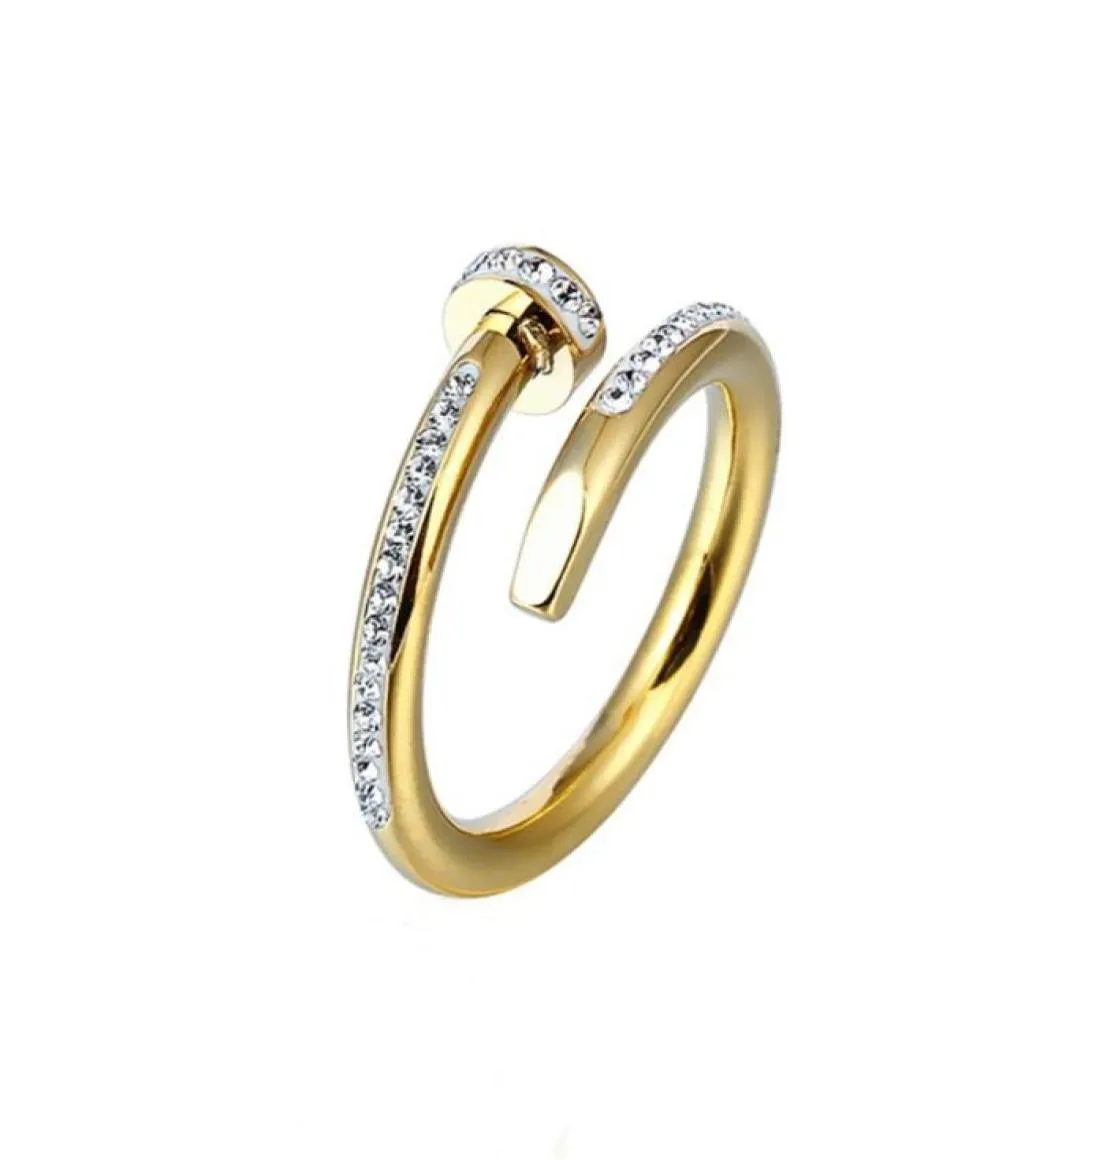 Yeni yüksek kaliteli tasarımcı tasarlanmış titanyum yüzük moda takı erkek ve dişi çiftler yüzüğü modern stil band81597624347251